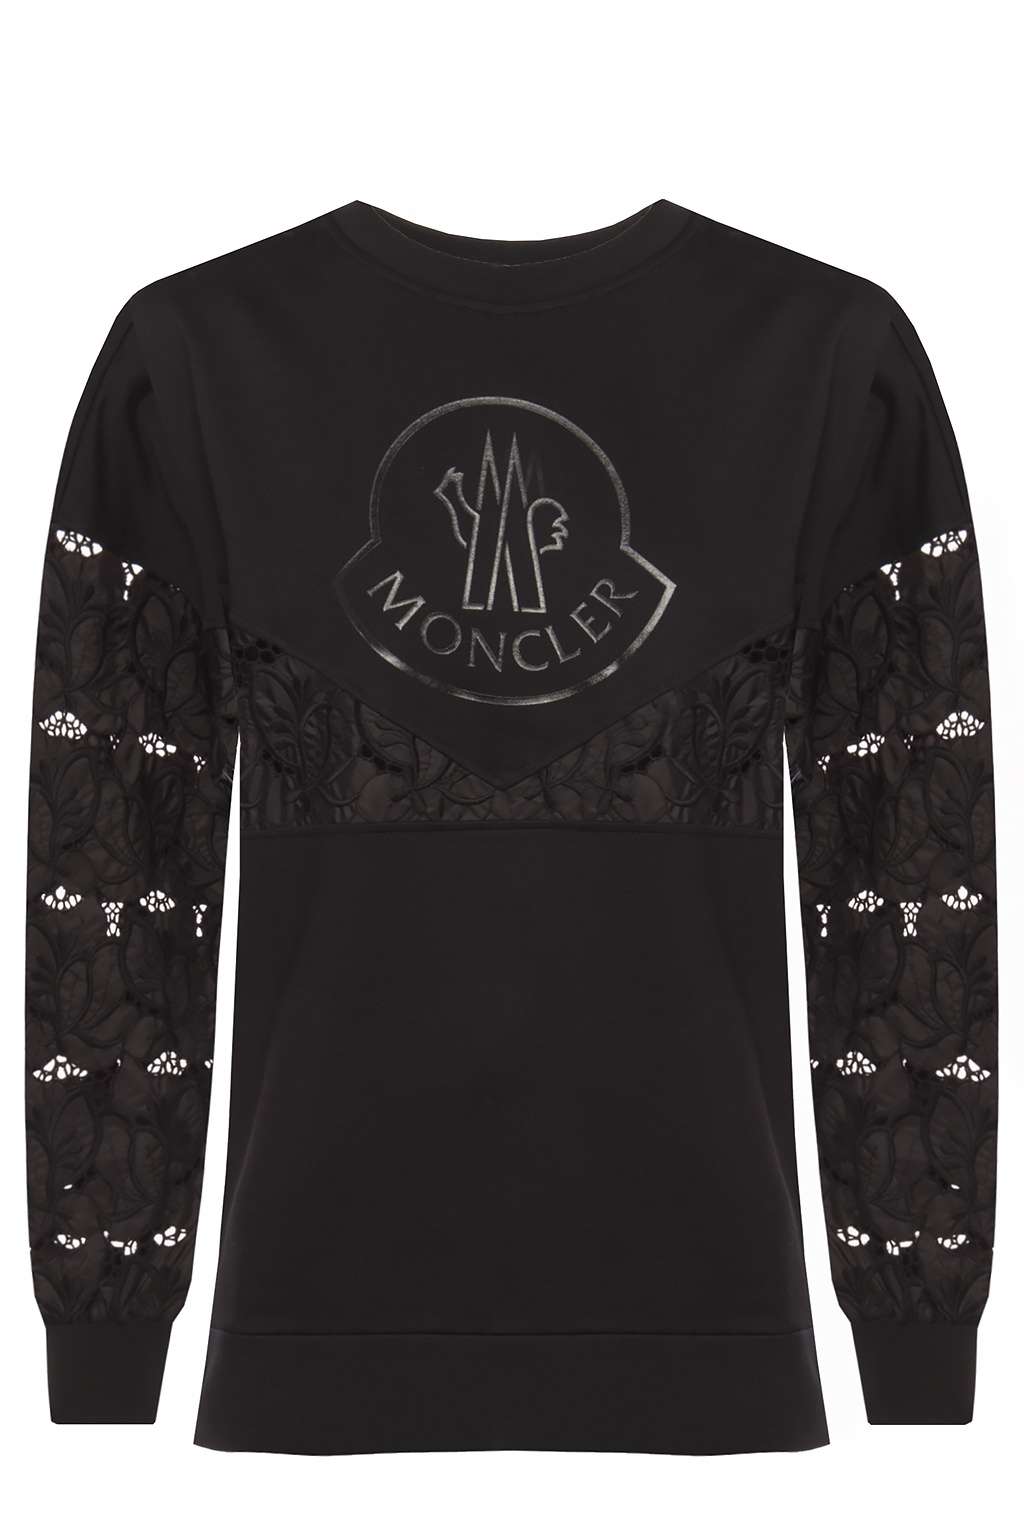 hack Antagonize Limited Moncler Logo sweatshirt | Women's Clothing | Vitkac